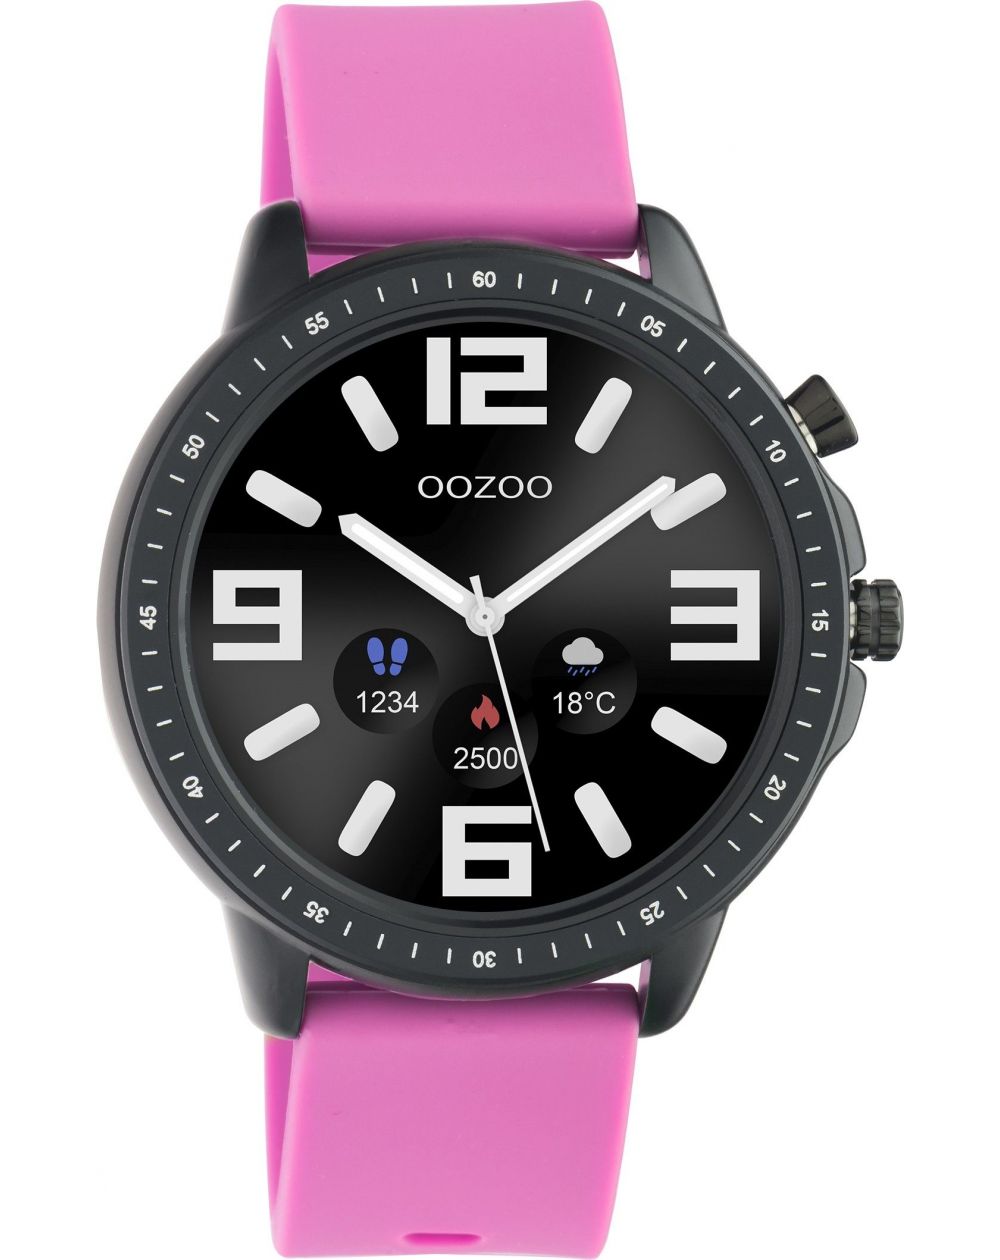 Montre Oozoo Q00331 - Smartwatch - Marque OOZOO - Livraison gratuite